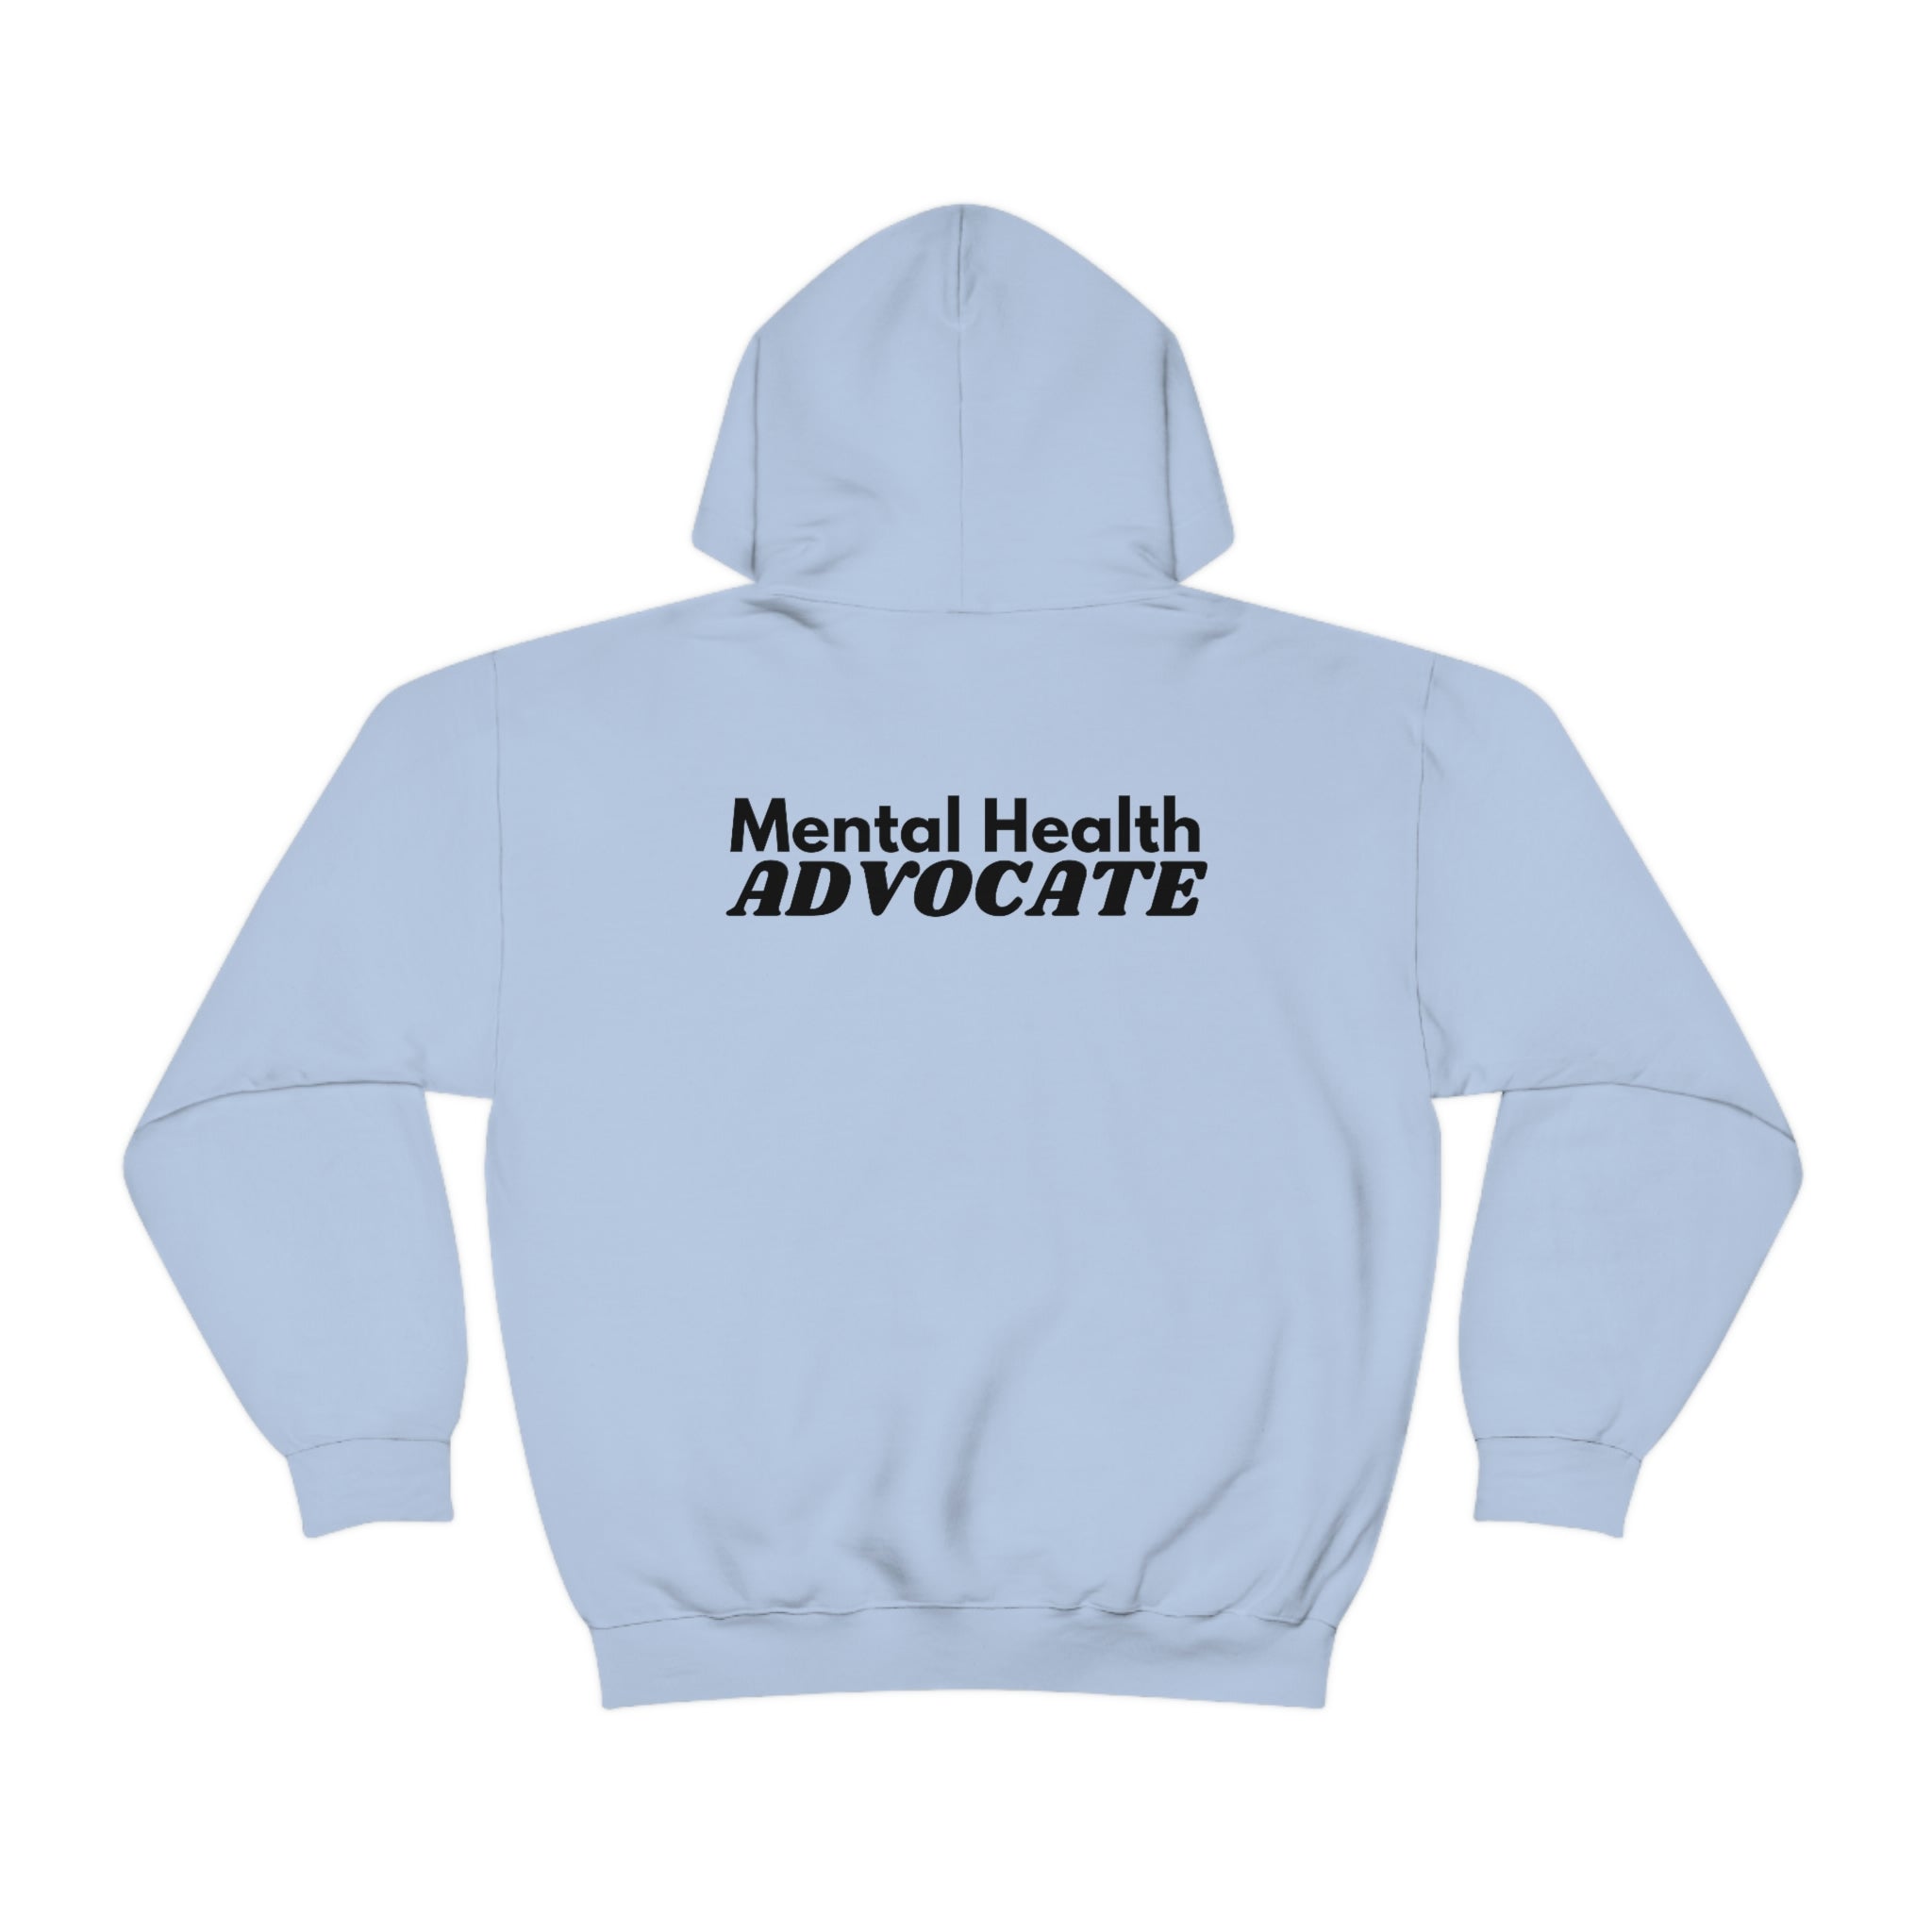 "Mental Health Advocate" Minimalist Unisex Hoodie